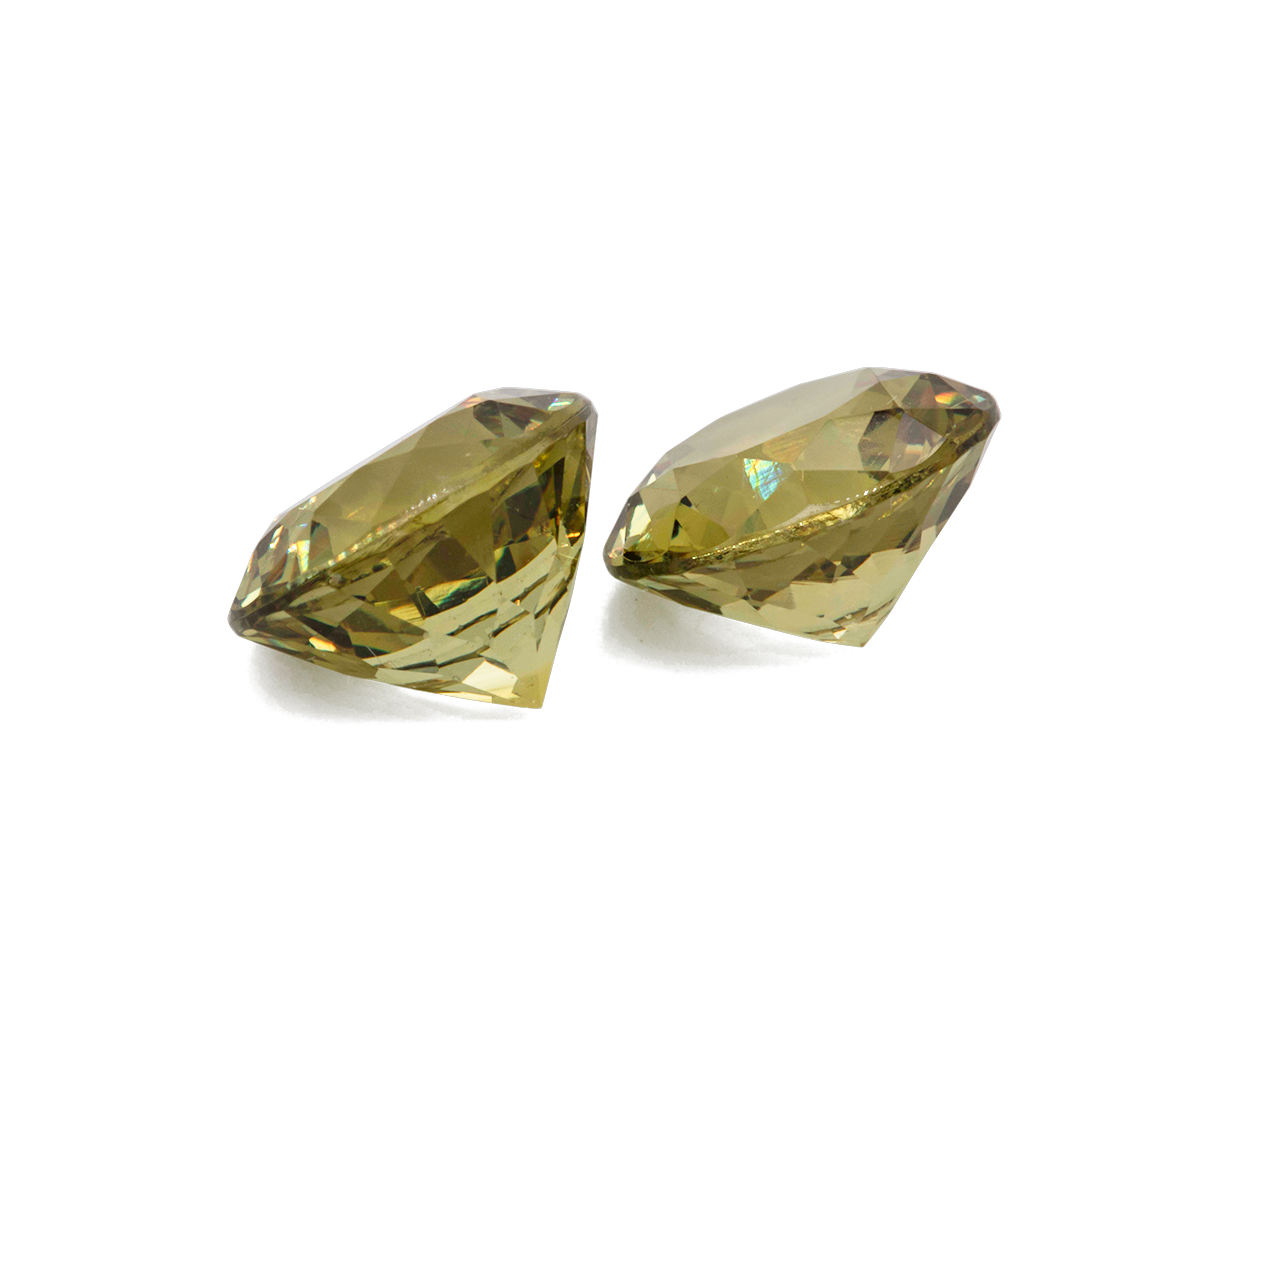 Mali Granat Paar - gelb, rund, 7,5x7,5 mm, 4,07 cts, Nr. MI10002